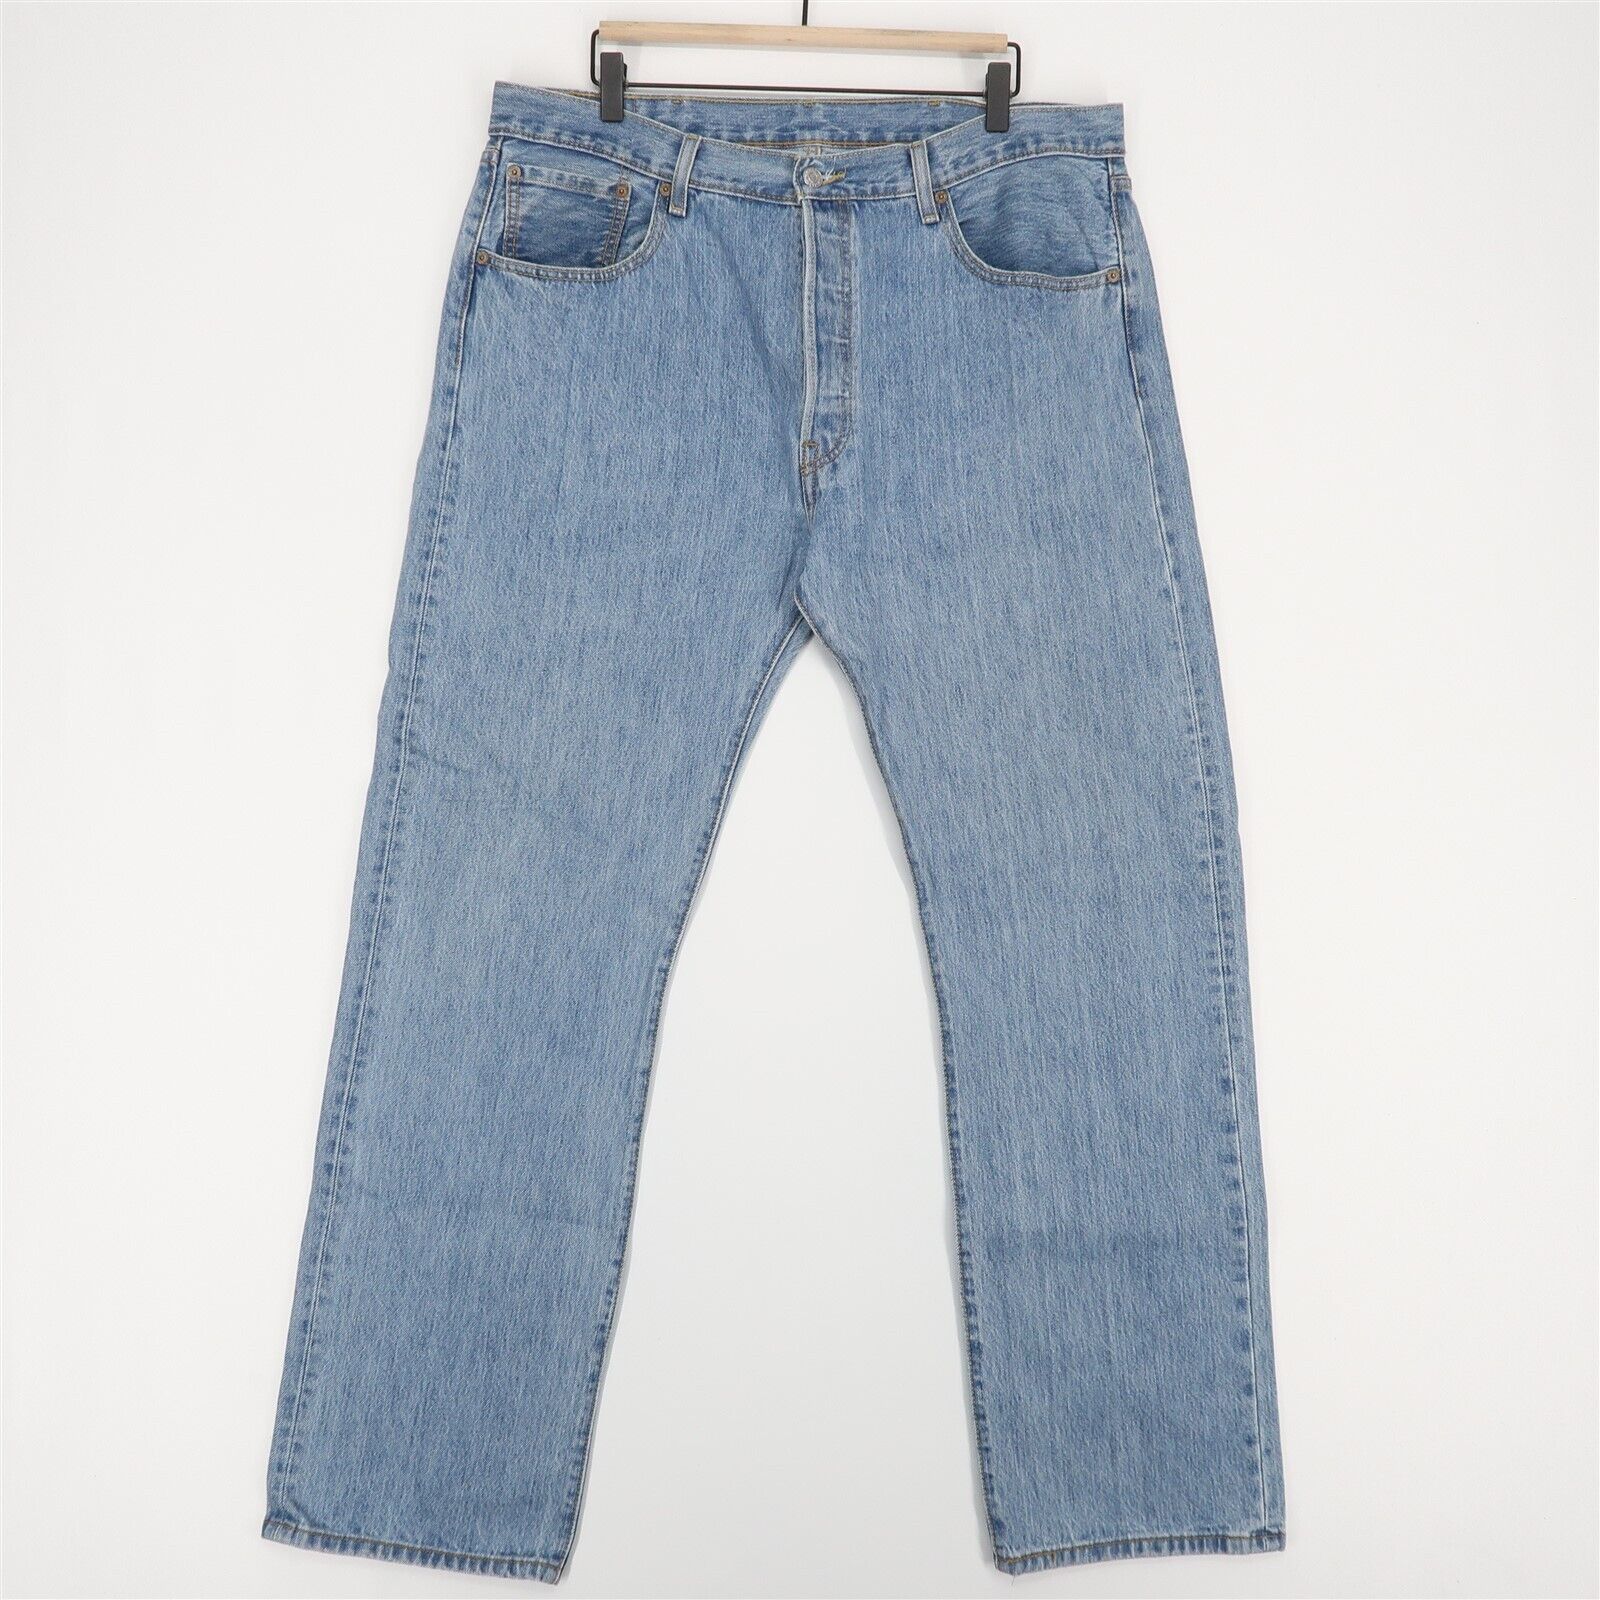 Levi's Levi's 501 Original Fit Jeans Mens 38x32 Blue Light Wash 100% ...